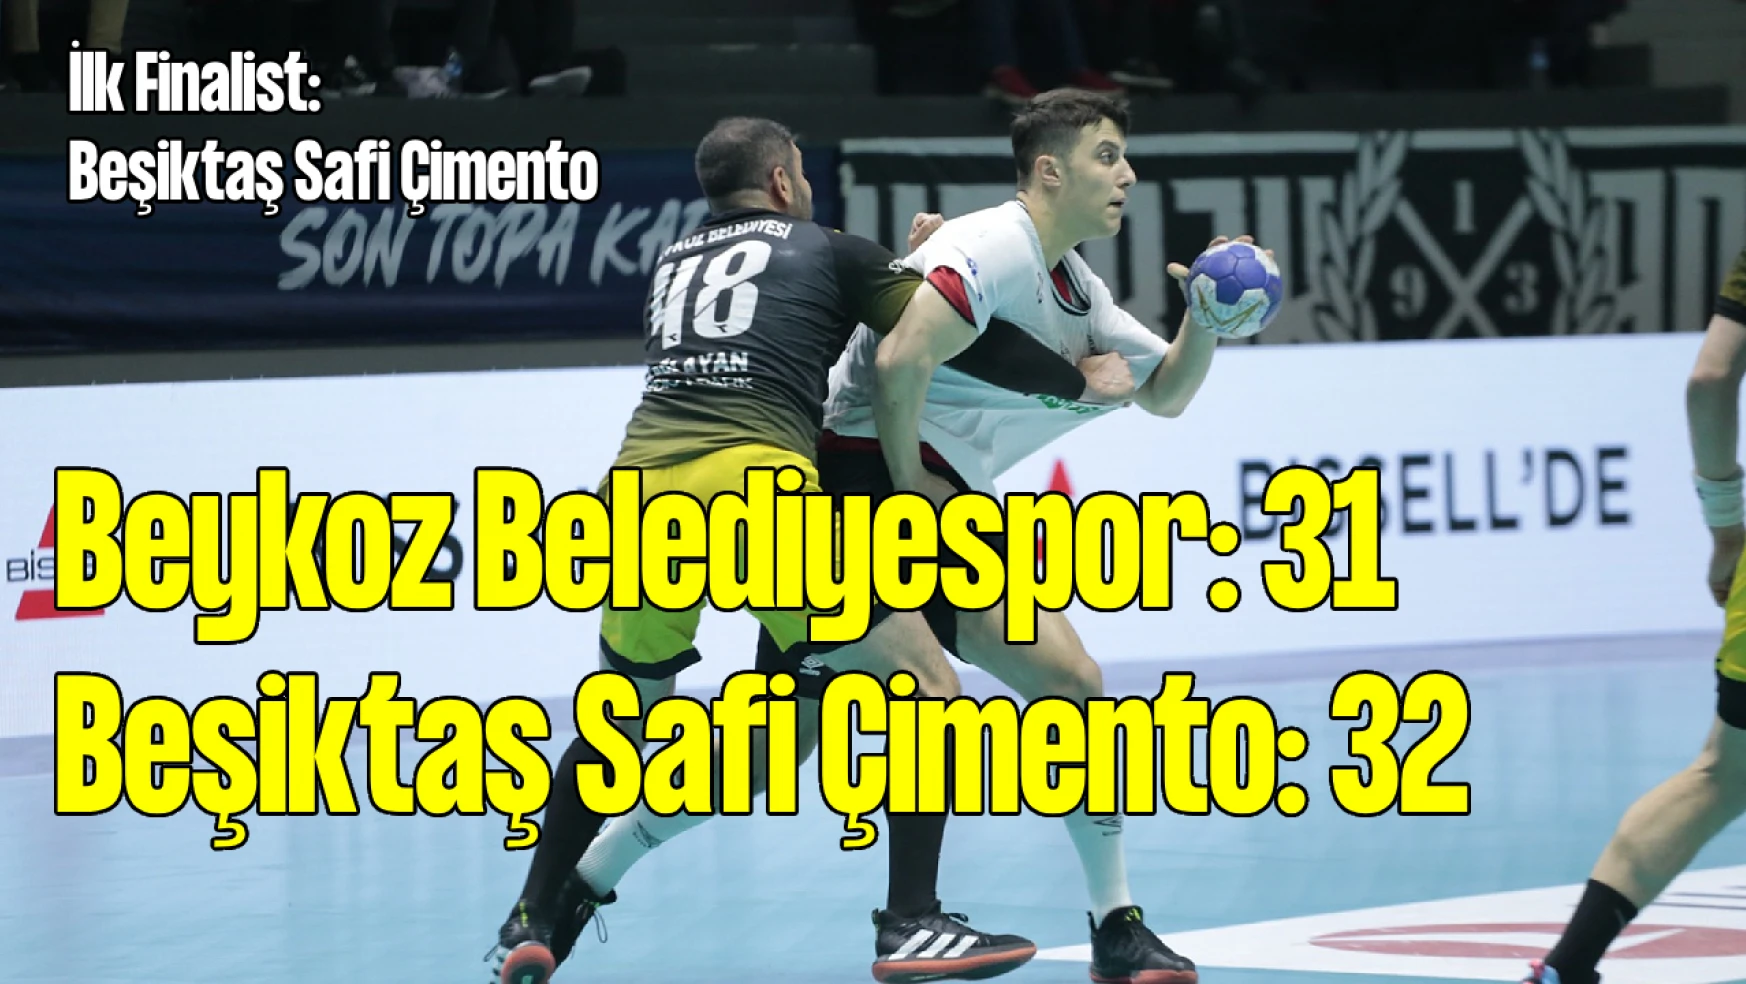 Beykoz Belediyespor - Beşiktaş Safi Çimento: 31-32